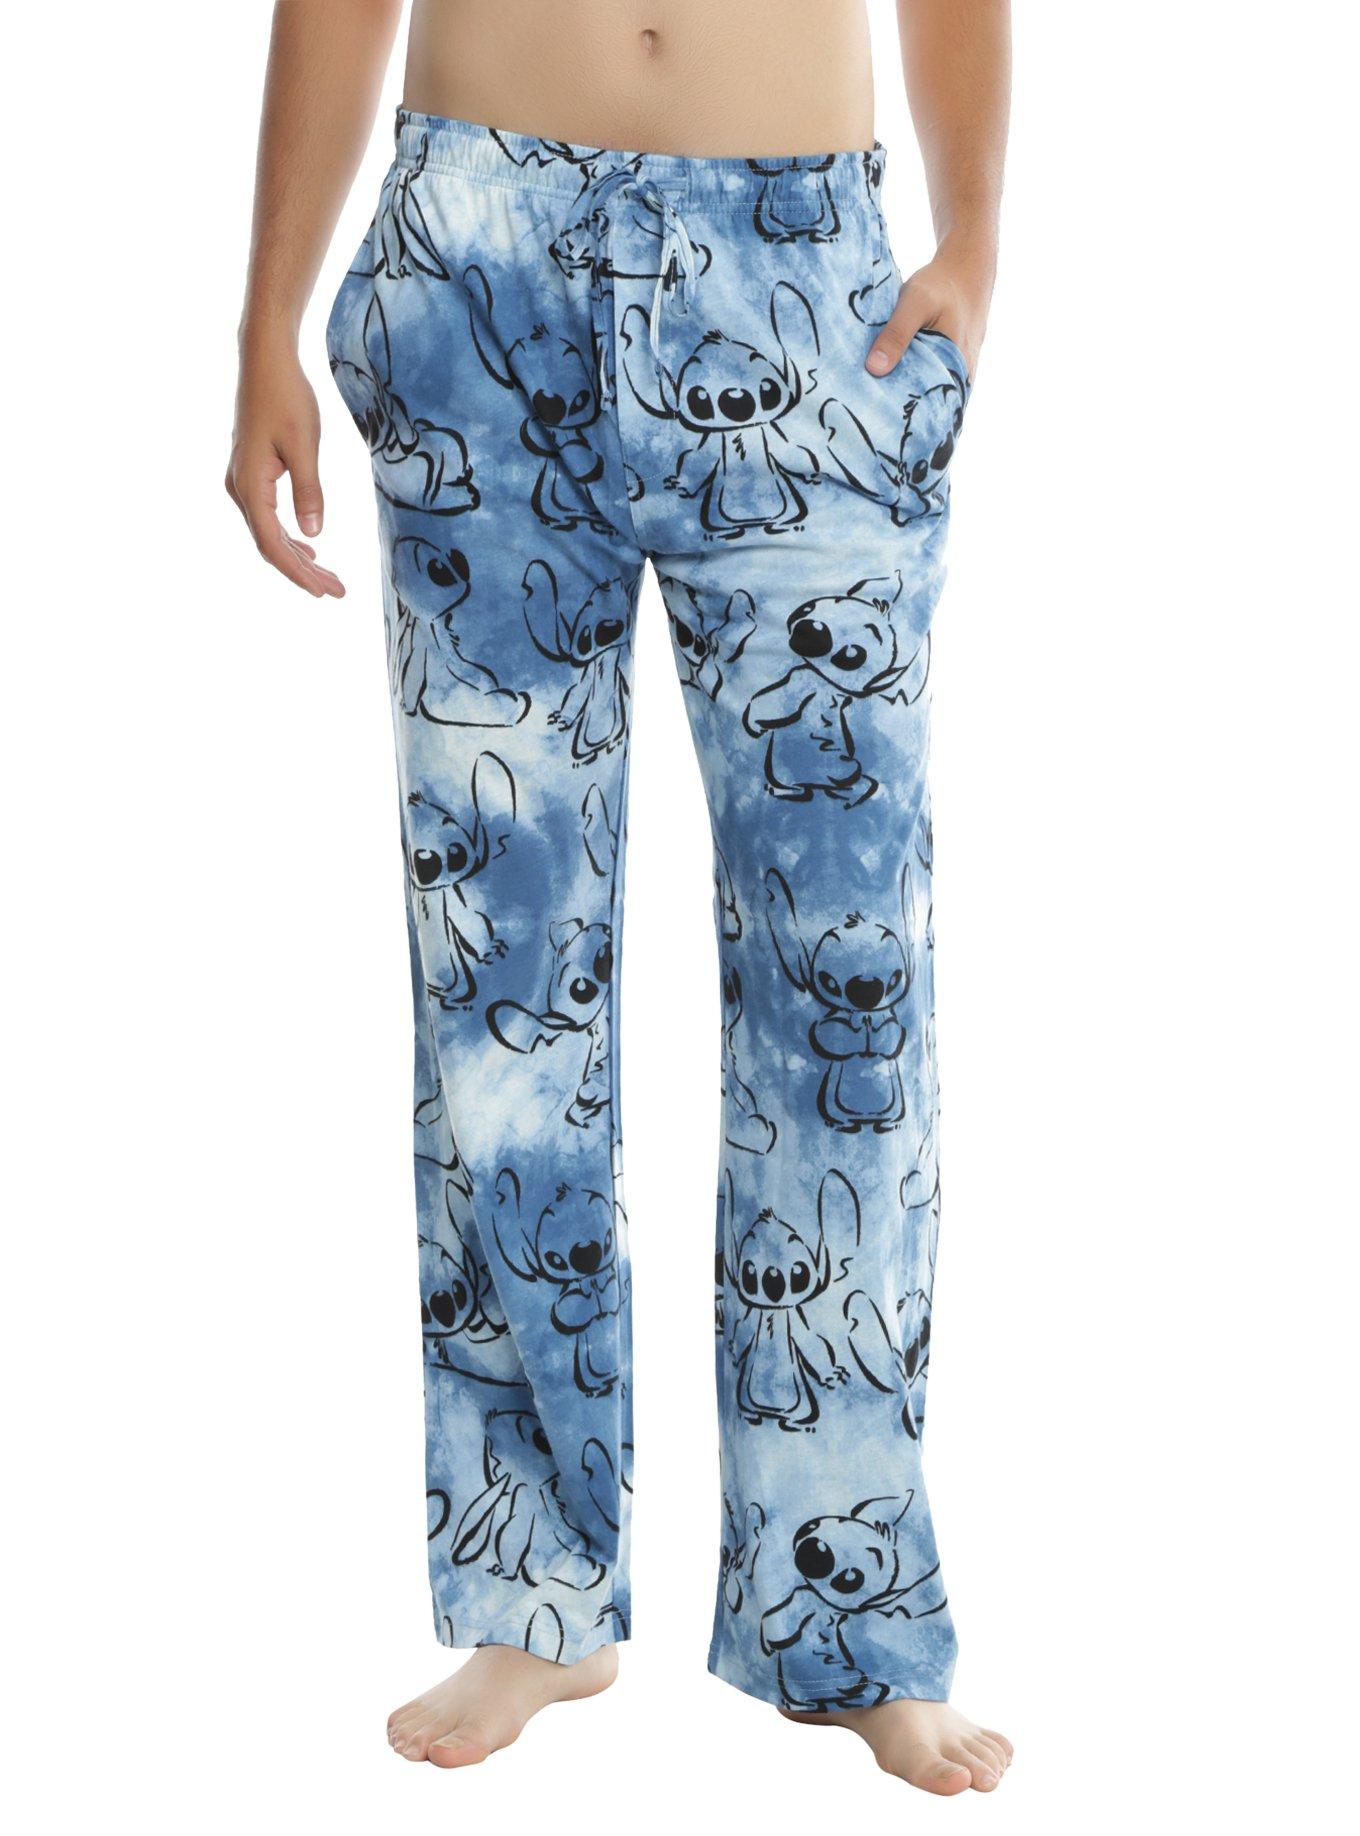 Disney Lilo & Stitch Blue Tie Dye Guys Pajama Pants | Hot Topic